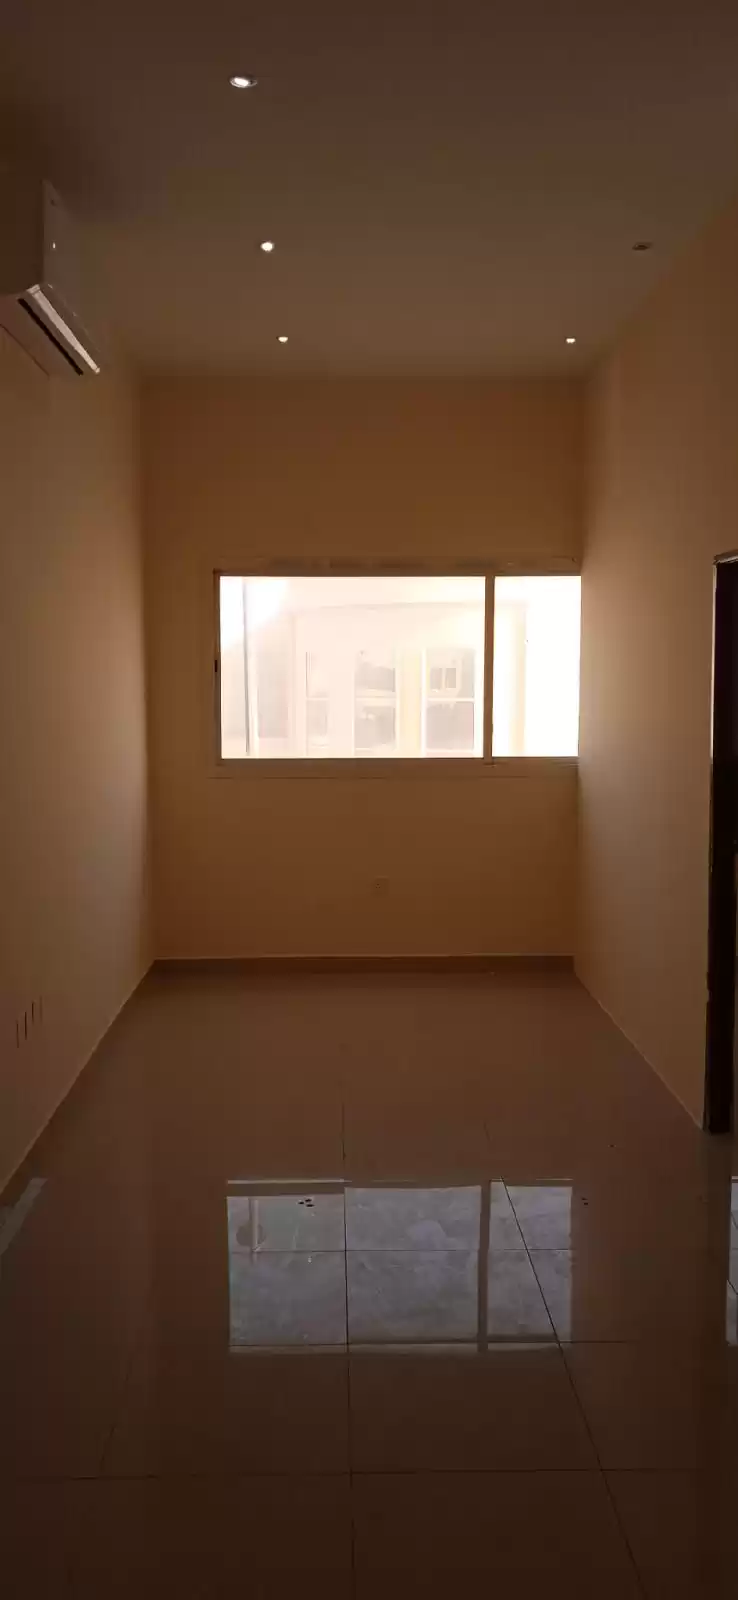 سكني عقار جاهز 1 غرفة  غير مفروش شقة  للإيجار في السد , الدوحة #14733 - 1  صورة 